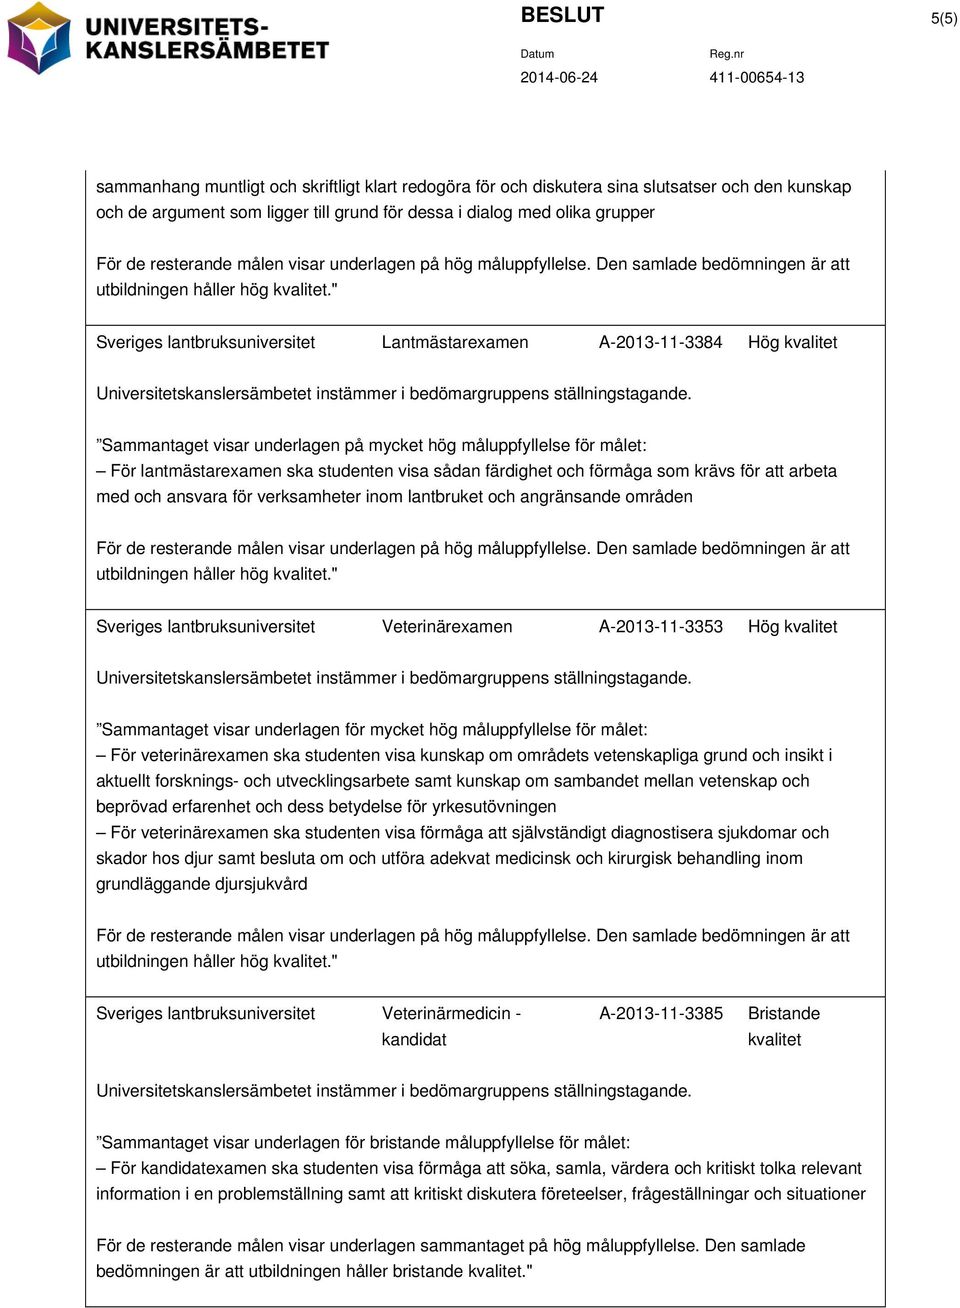 " Sveriges lantbruksuniversitet Lantmästarexamen A-2013-11-3384 Hög kvalitet Universitetskanslersämbetet instämmer i bedömargruppens ställningstagande.